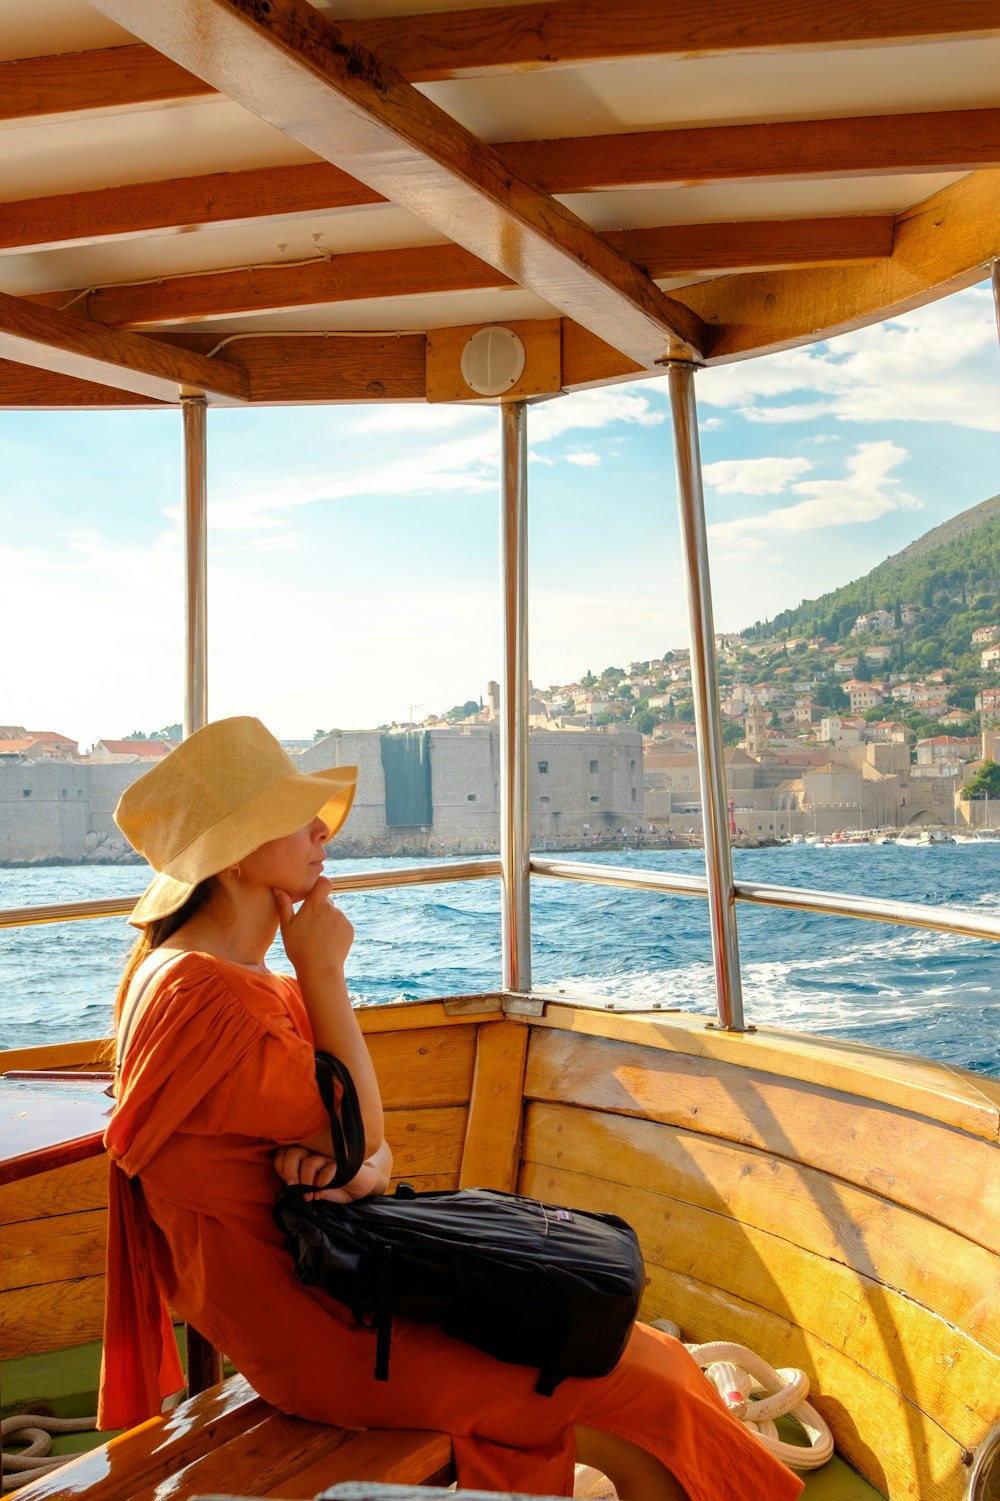 femme au chapeau de soleil marron assis sur un bateau en bois marron  pendant la journée photo – Photo Croazia Gratuite sur Unsplash